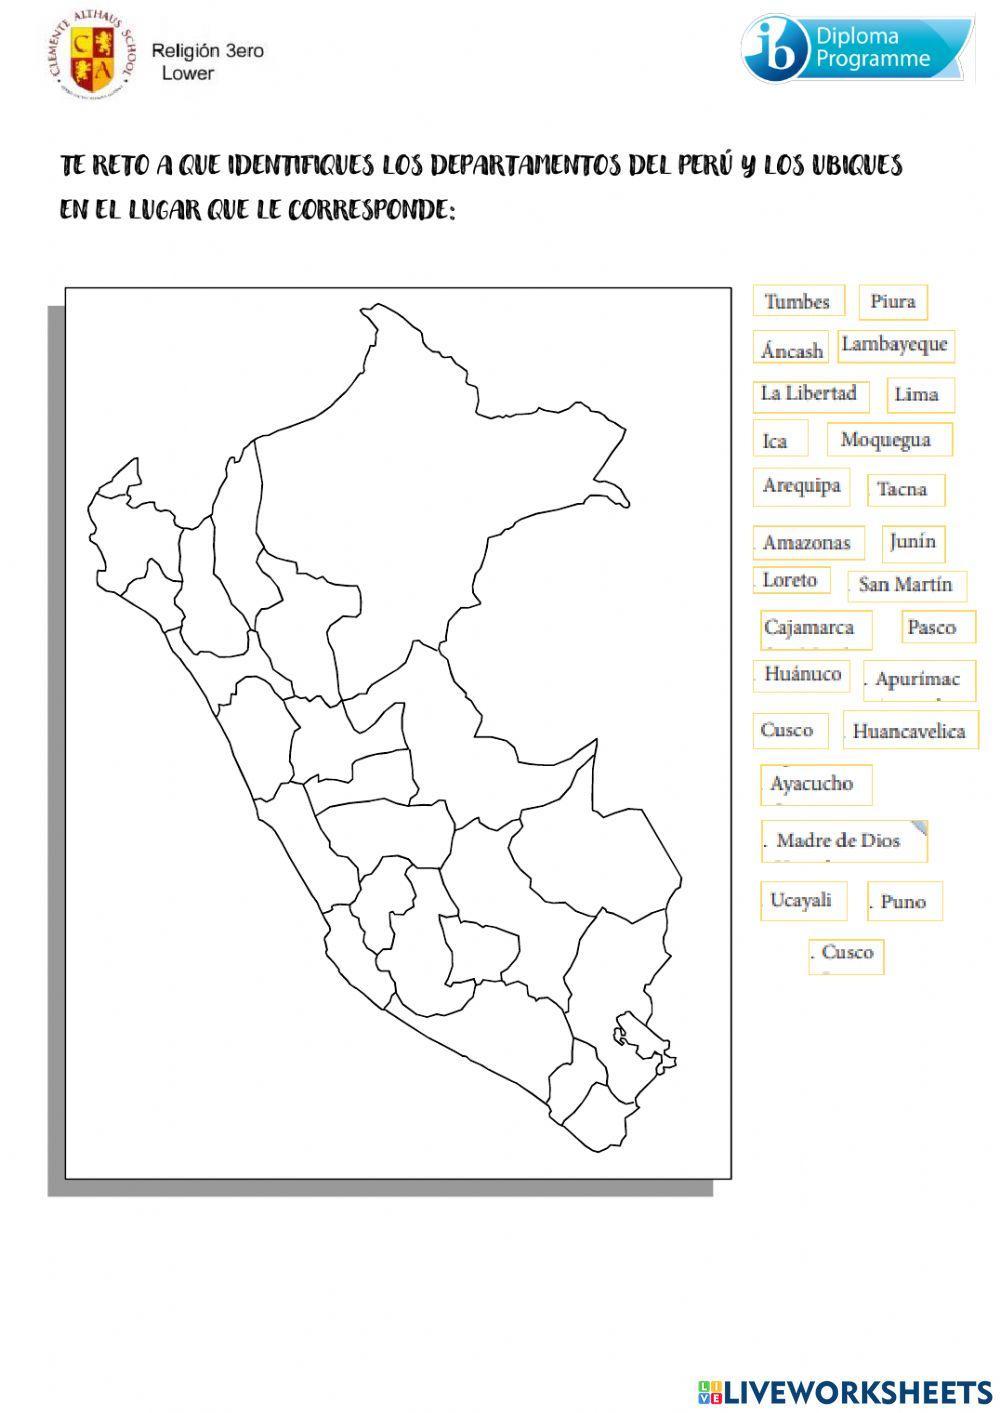 Los departamentos del Perú